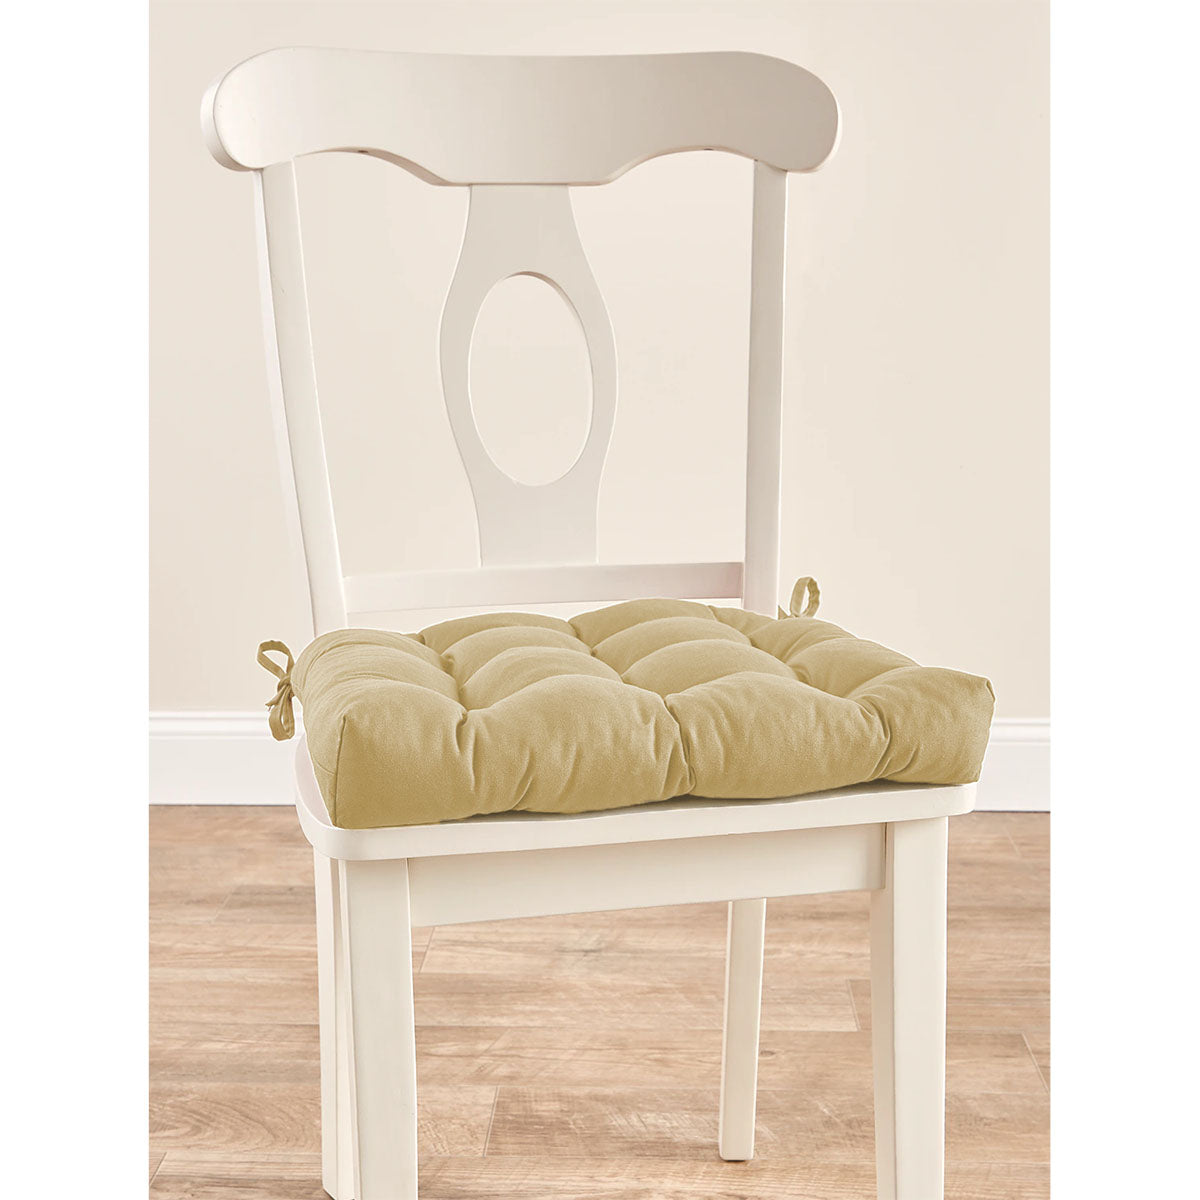 VCS - Never-Flatten Chair Pad - Duck Cloth